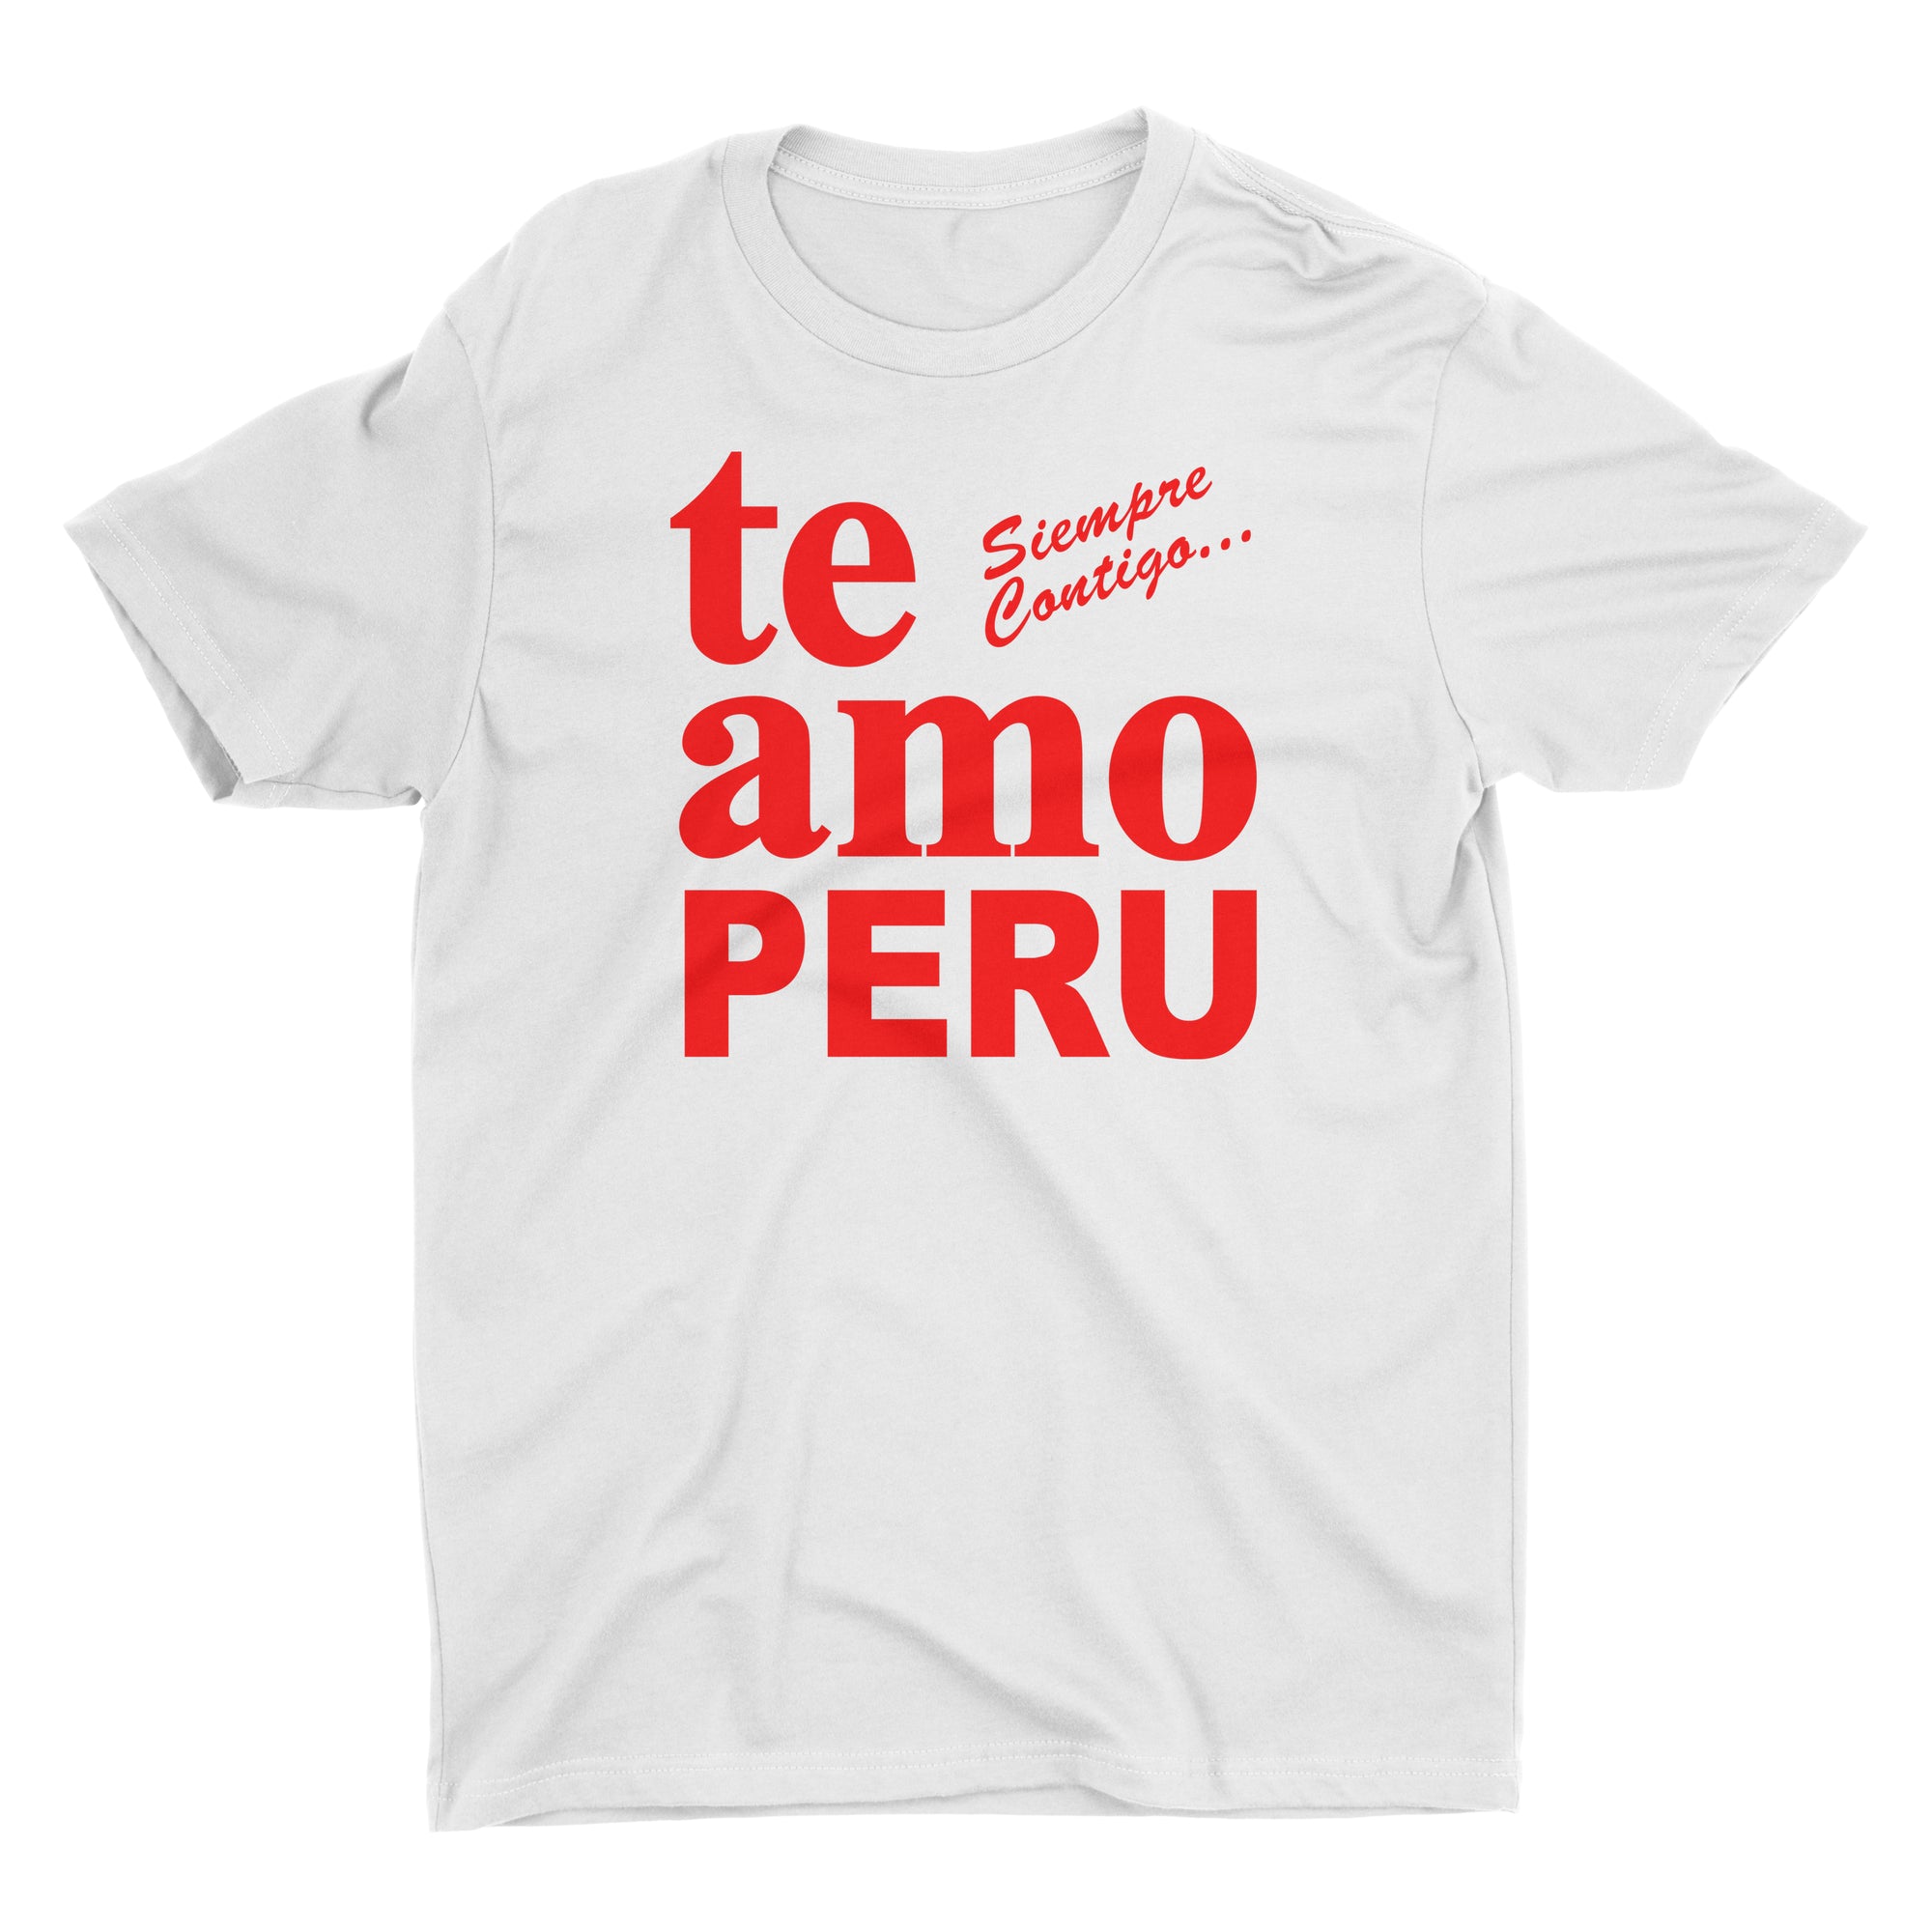 Te Amo Peru Siempre Contigo White Short Sleeve Crewneck T-Shirt for Men